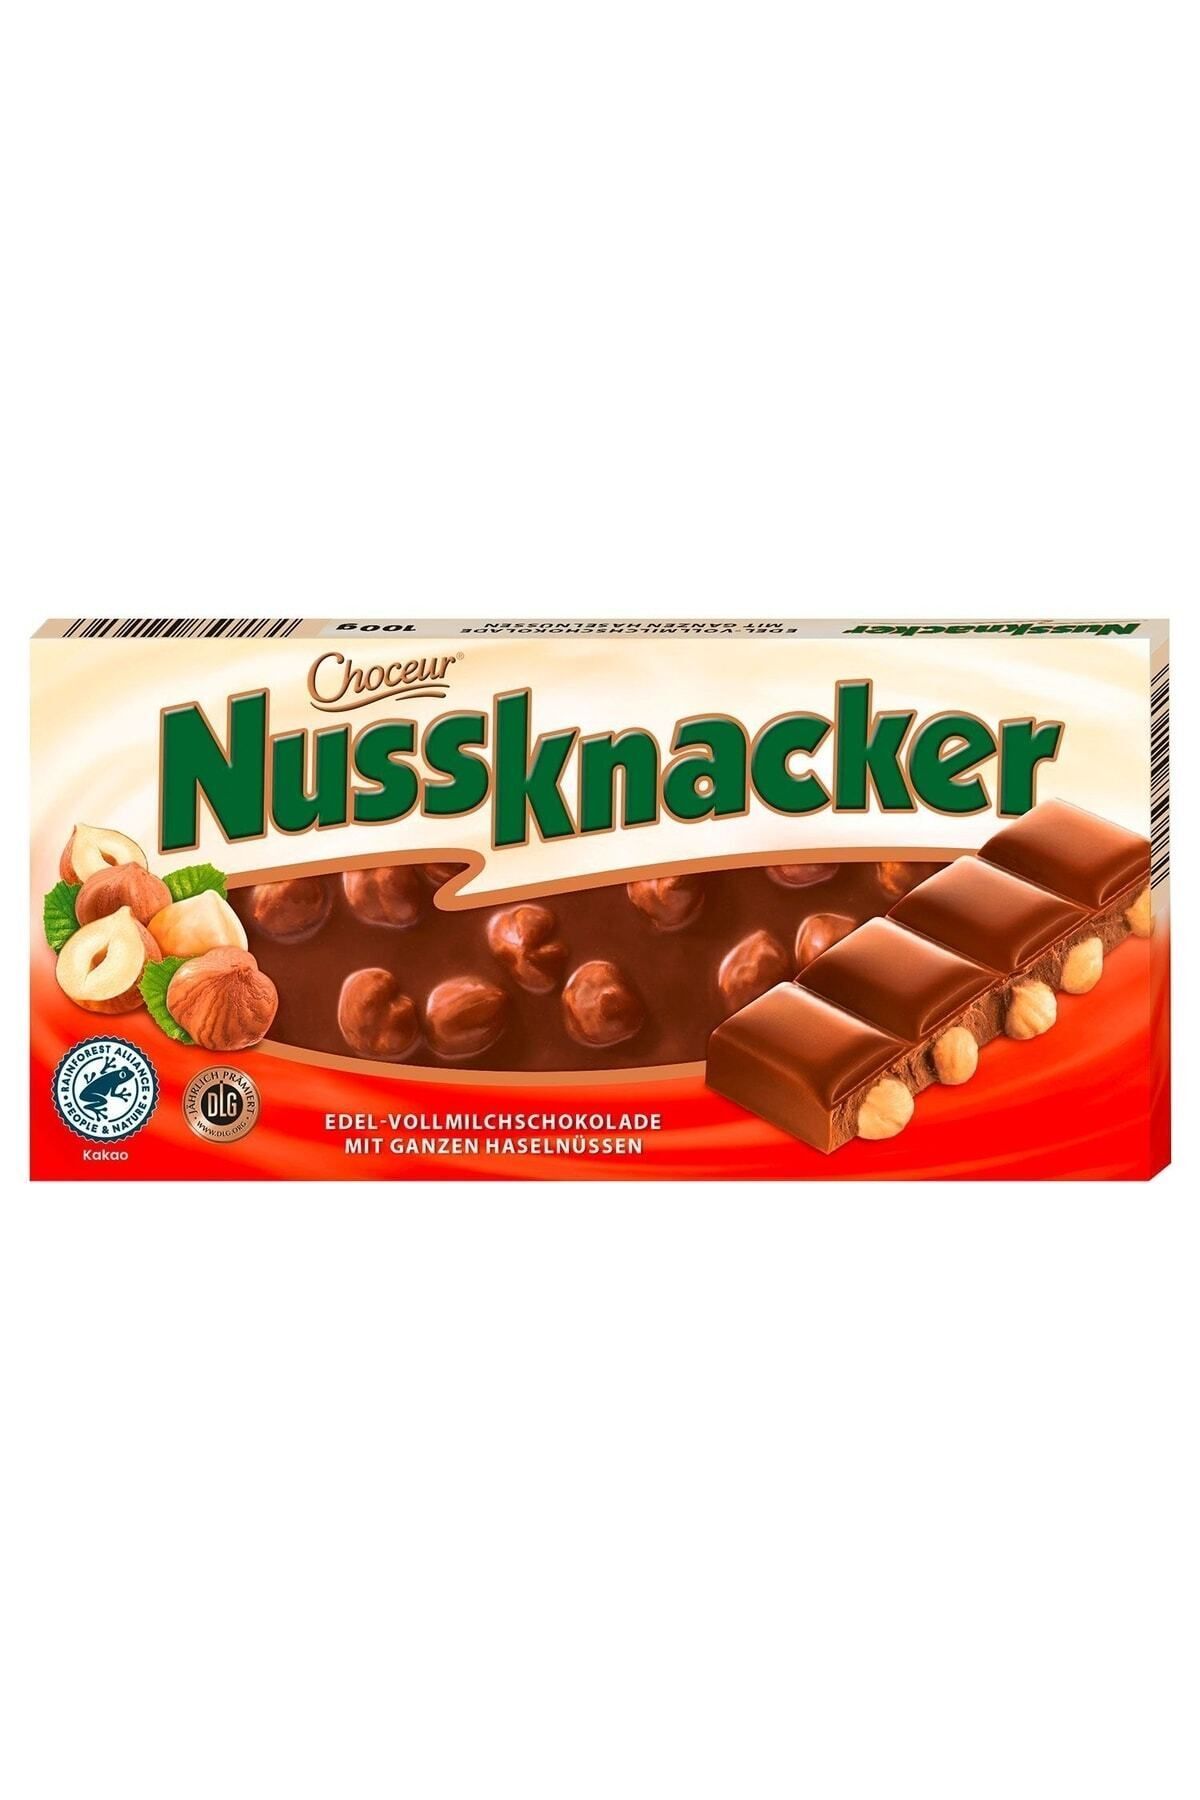 Choceur Nussknacker Alman Çikolatası 5 Adet (5x100g)